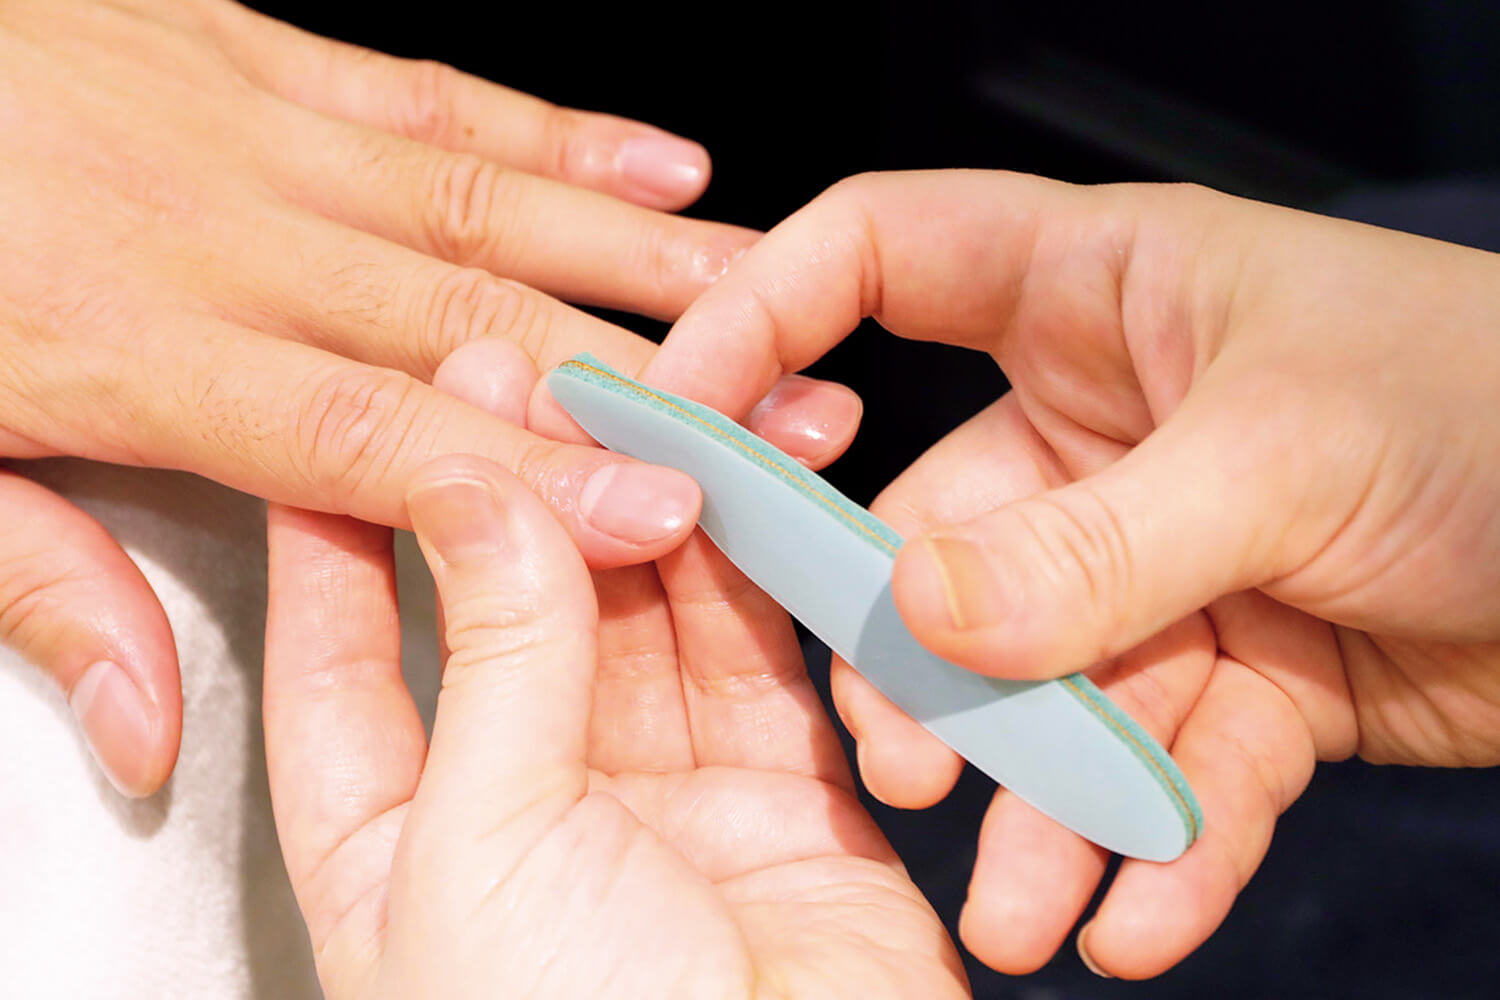 ネイルケア 手順6 るネイルペーパーを使い爪の表面を適度に磨く作業